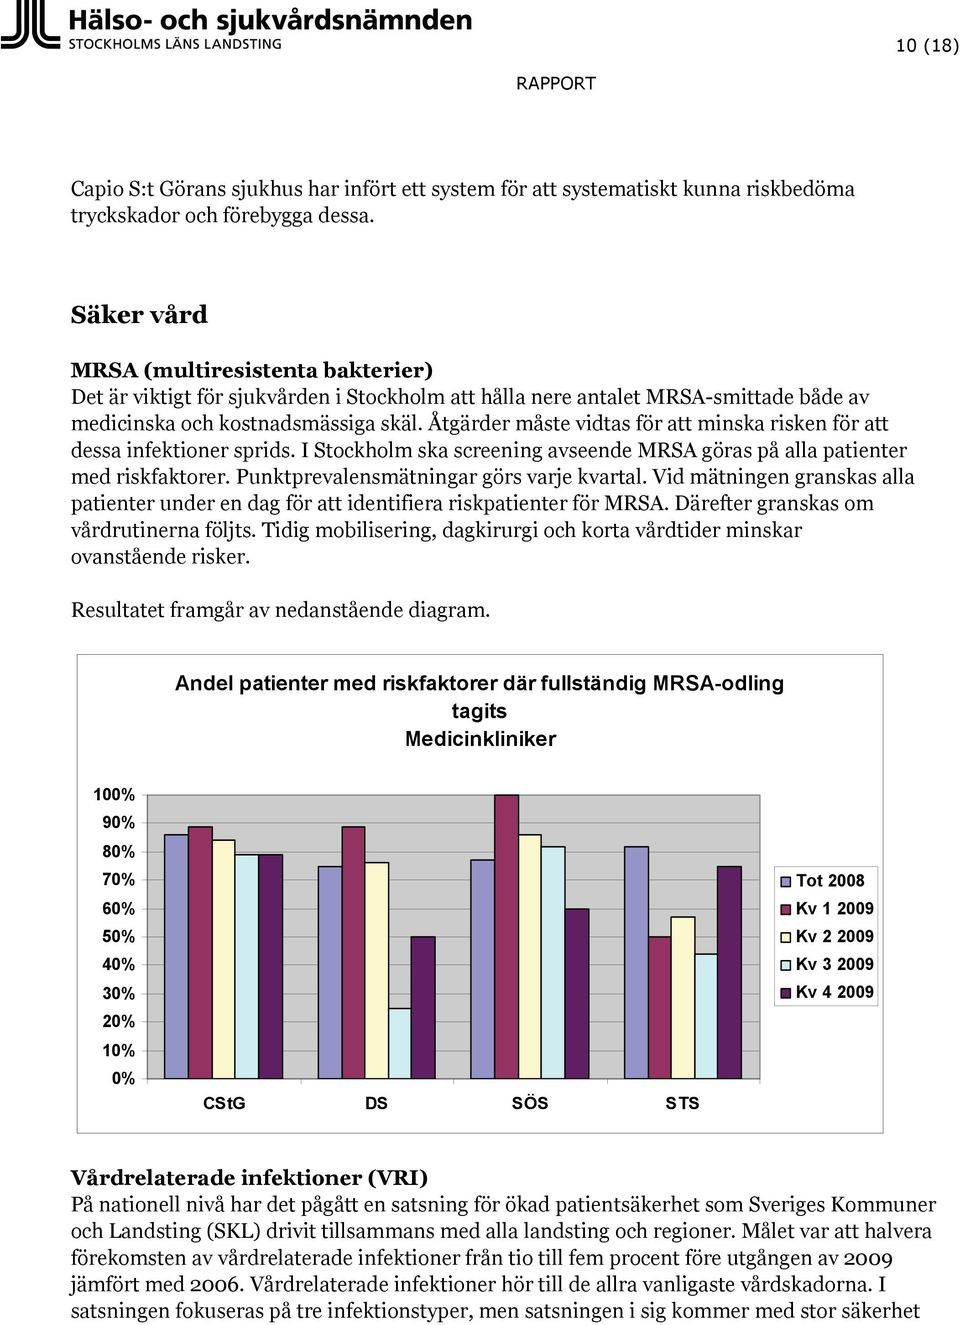 Åtgärder måste vidtas för att minska risken för att dessa infektioner sprids. I Stockholm ska screening avseende MRSA göras på alla patienter med riskfaktorer.